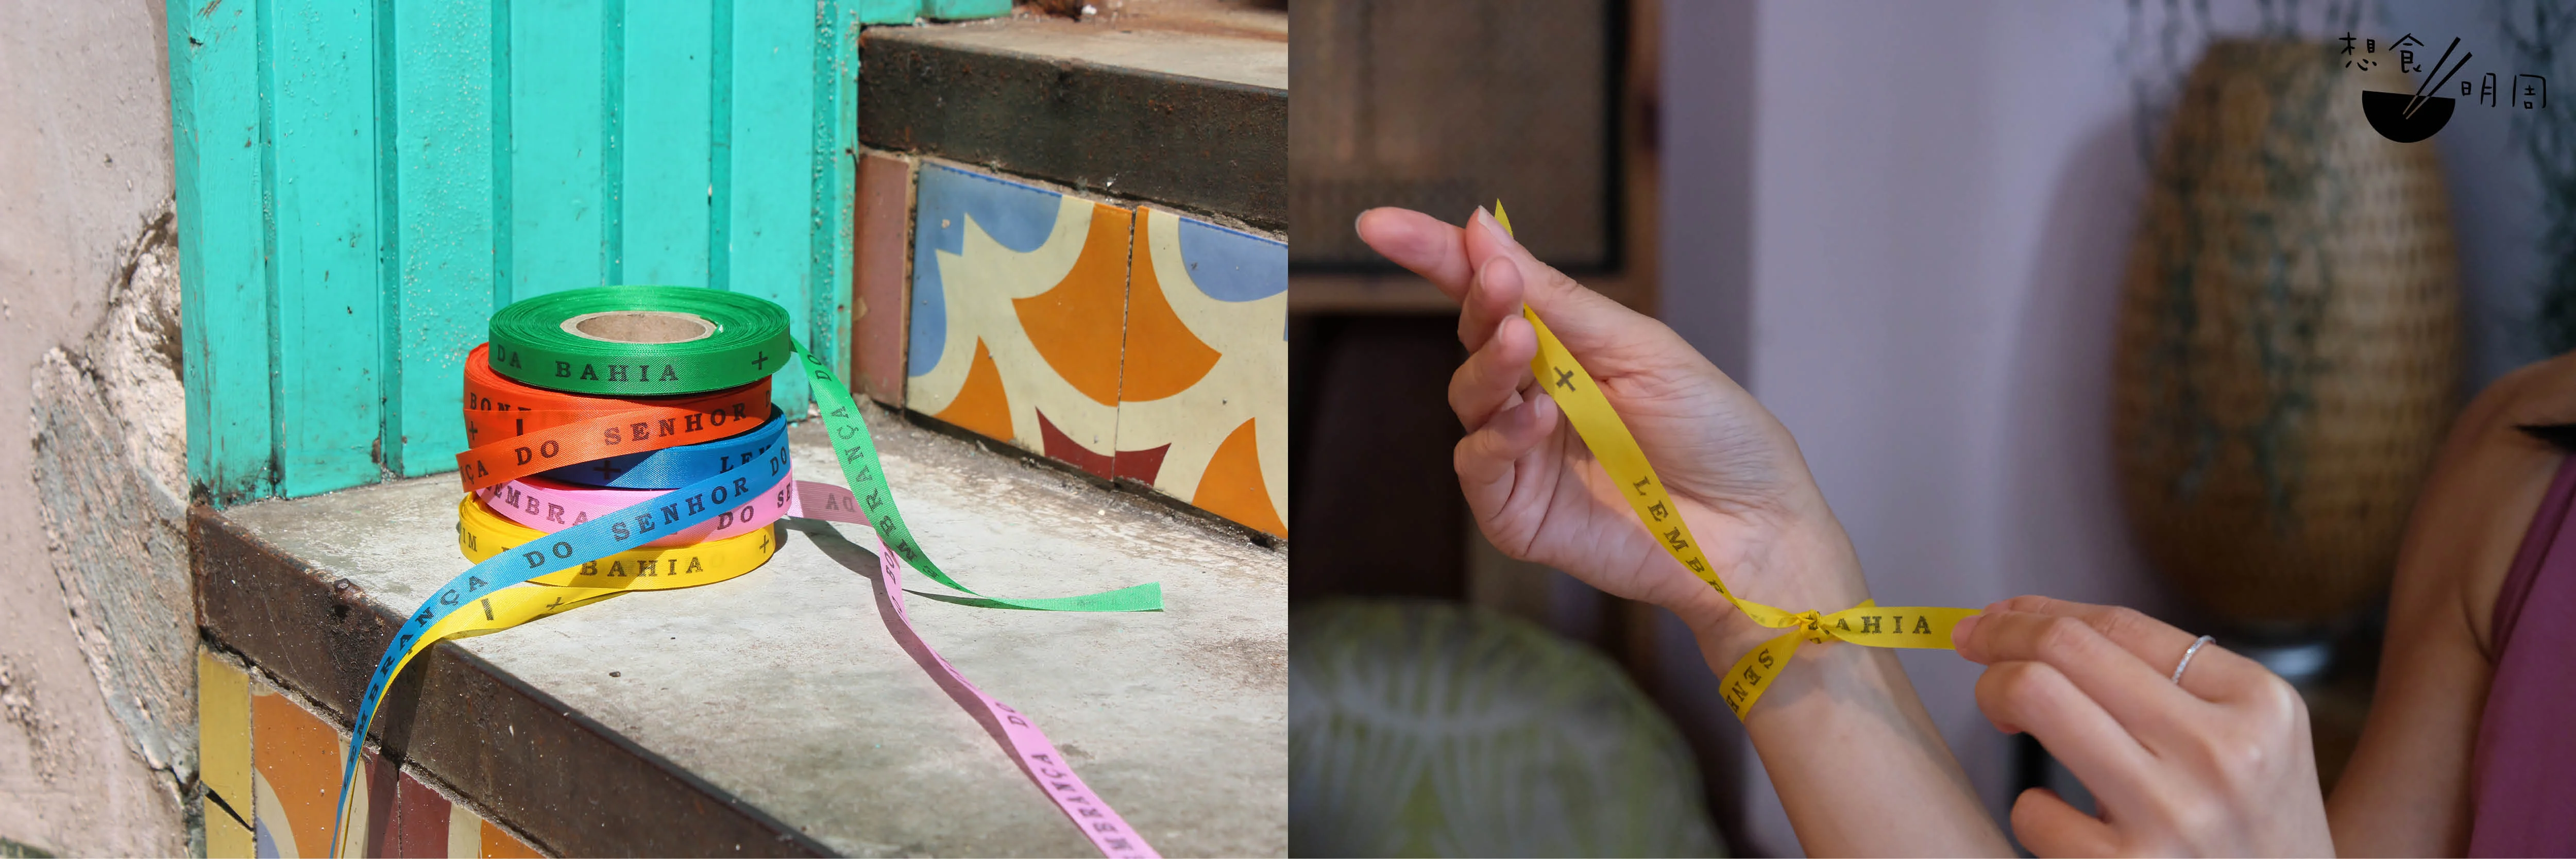 在巴西巴伊亞薩爾瓦多下城的I繽紛主教堂外圍，掛有大量彩色絲帶。傳說，只要在手上綁上彩帶，每打結一次，代表一個願望。當自然脫下時，就代表願望成真。